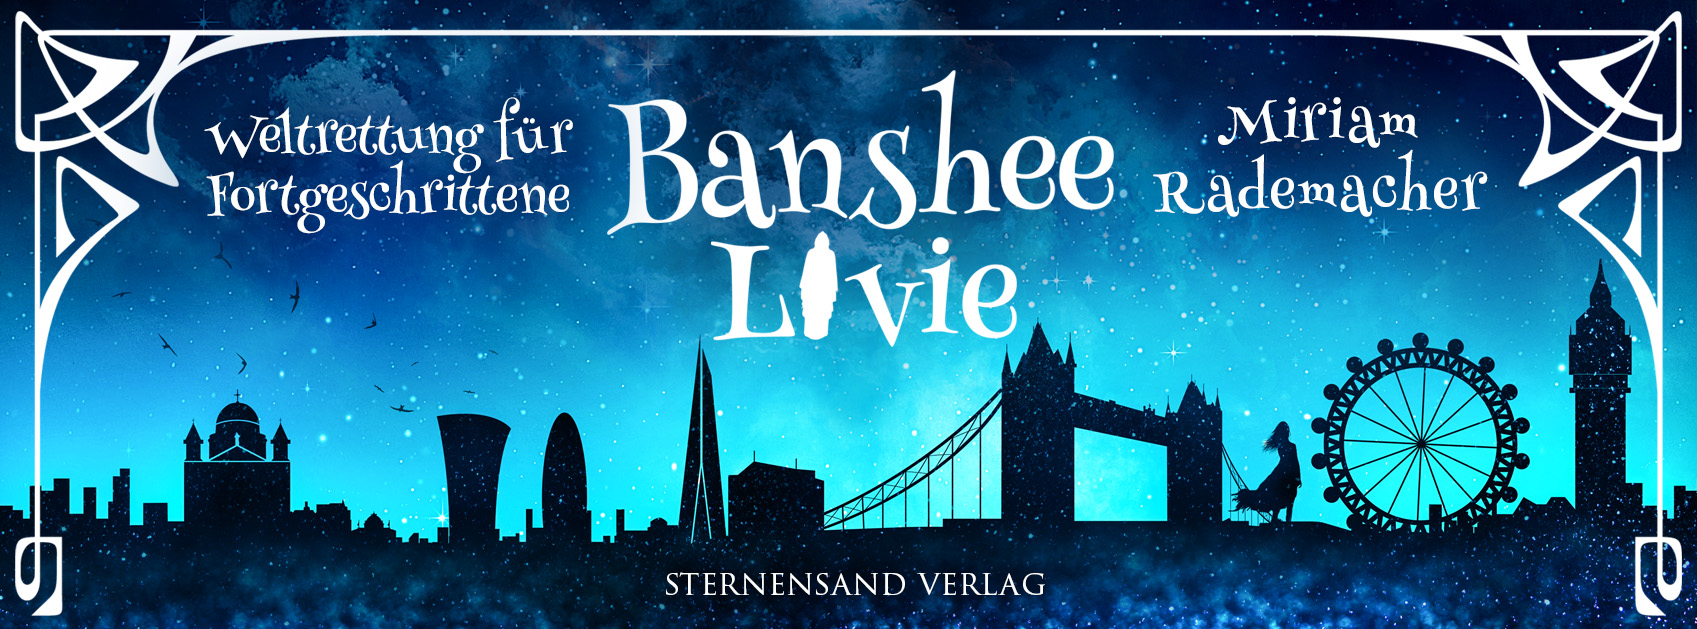 Banshee2 Banner